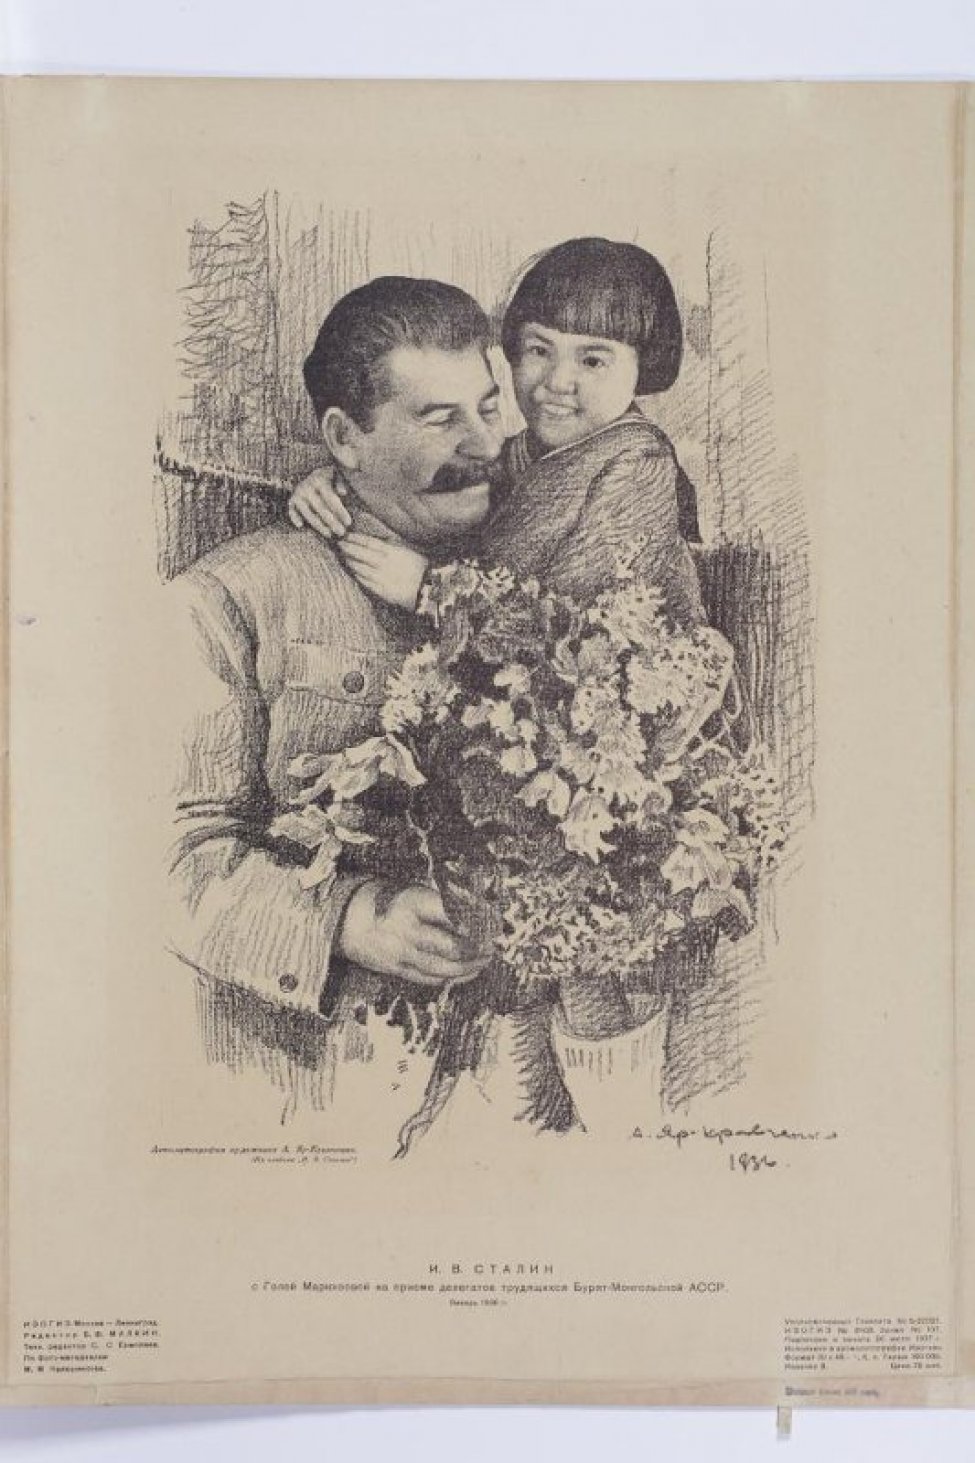 Изображен Сталин с девочкой на руках, которая обхватила его за шею, и с букетом цветов.